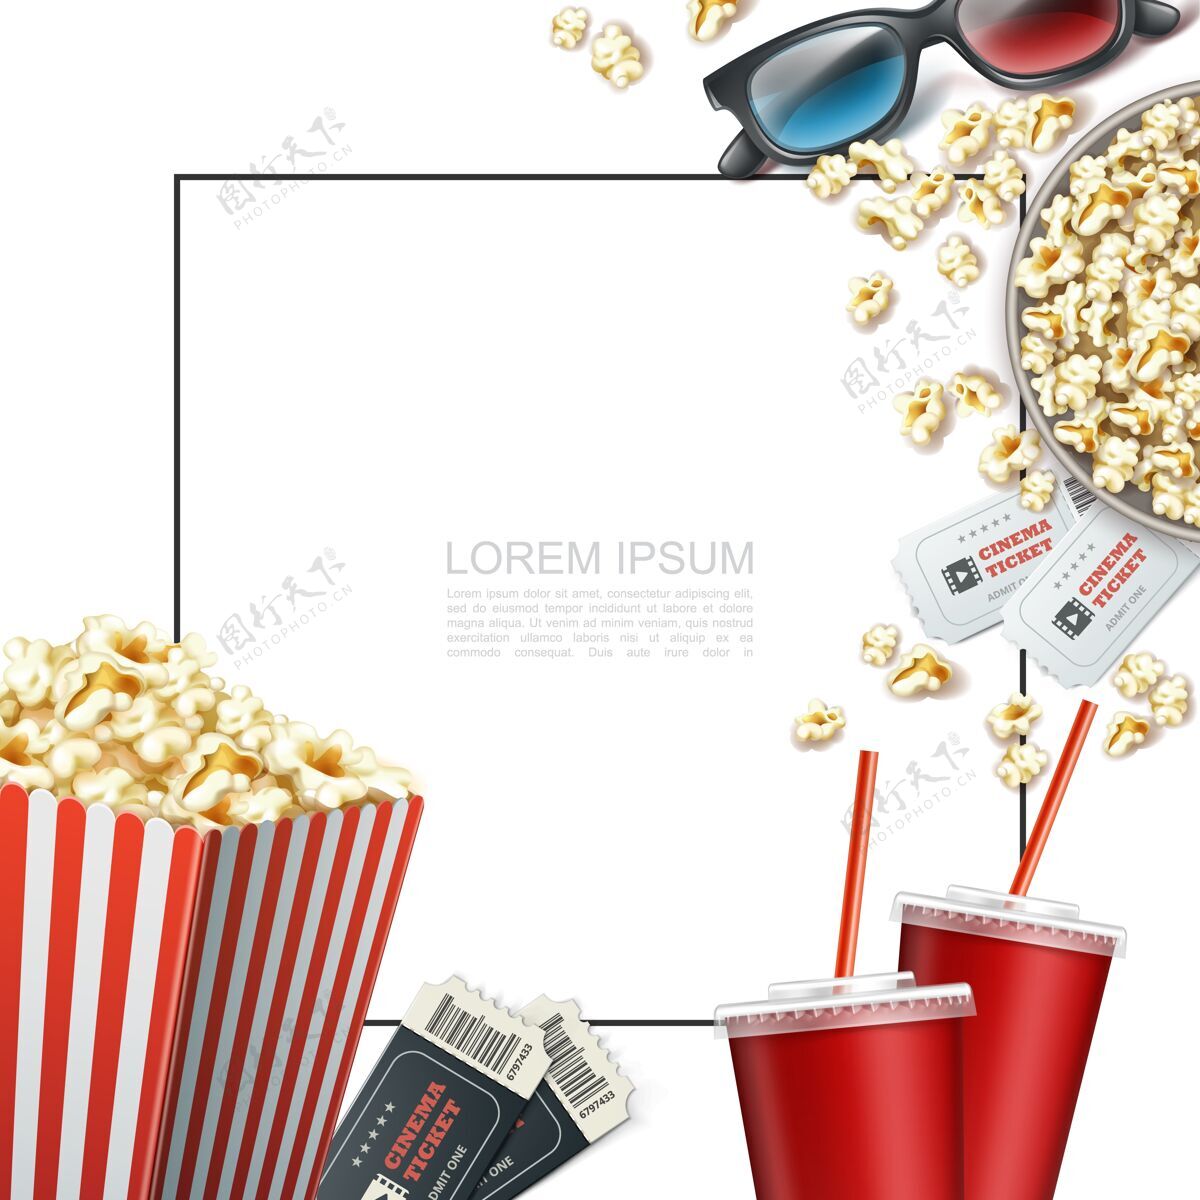 电影现实的电影元素模板与文本框架三维眼镜票汽水杯条纹纸盒和爆米花桶纸盒子食物